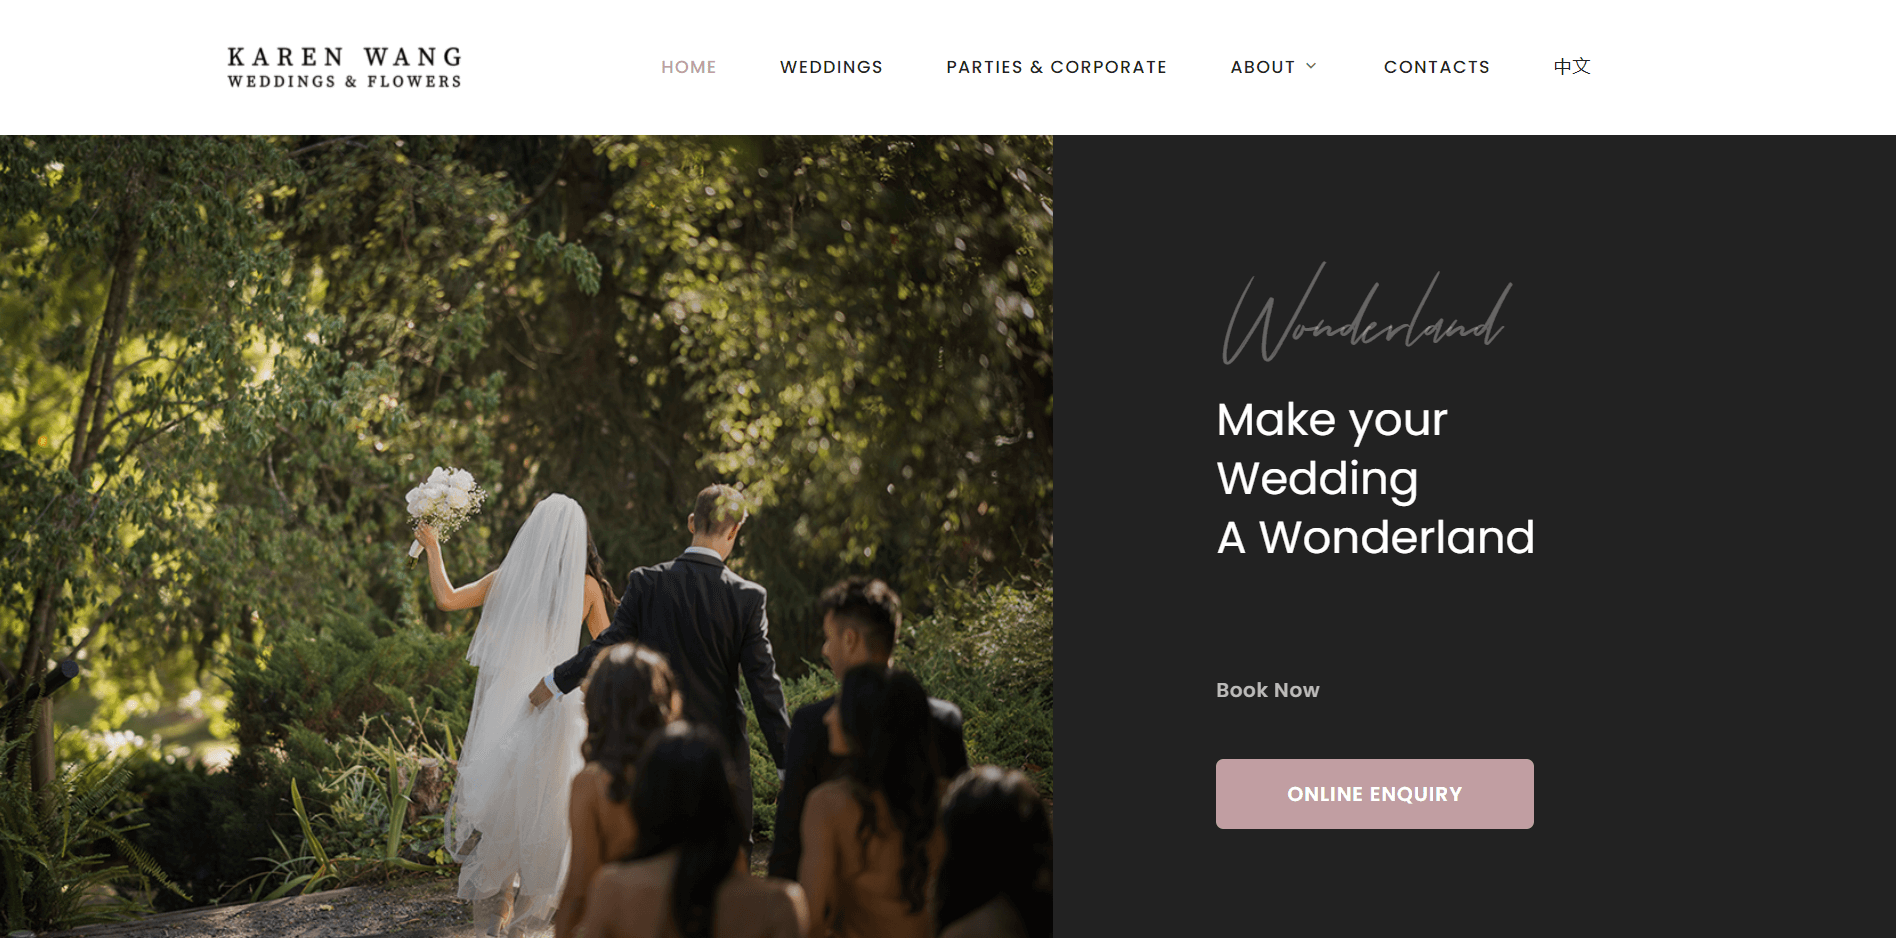 kw weddings & flowers